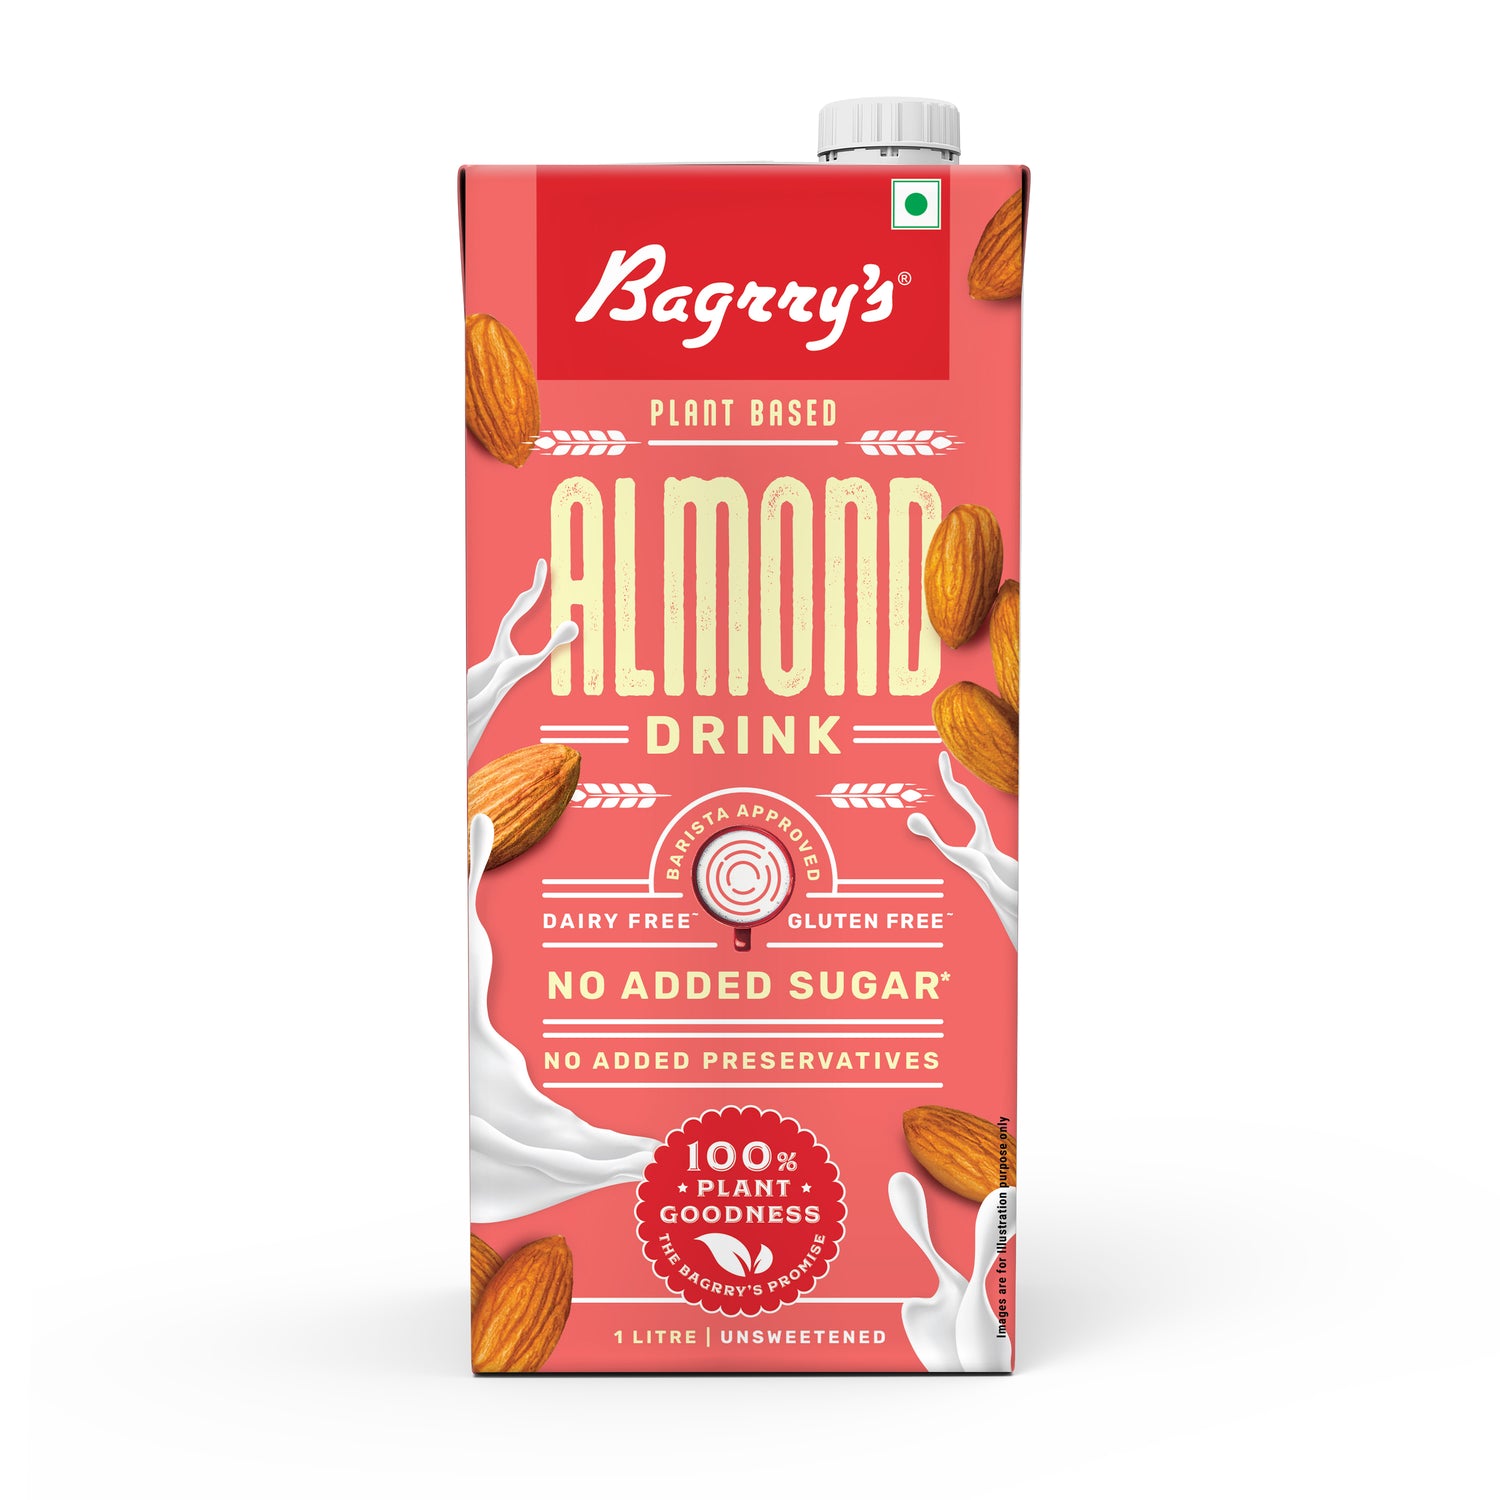 Almond Drink - Plant Based, Gluten Free, 1 Liter